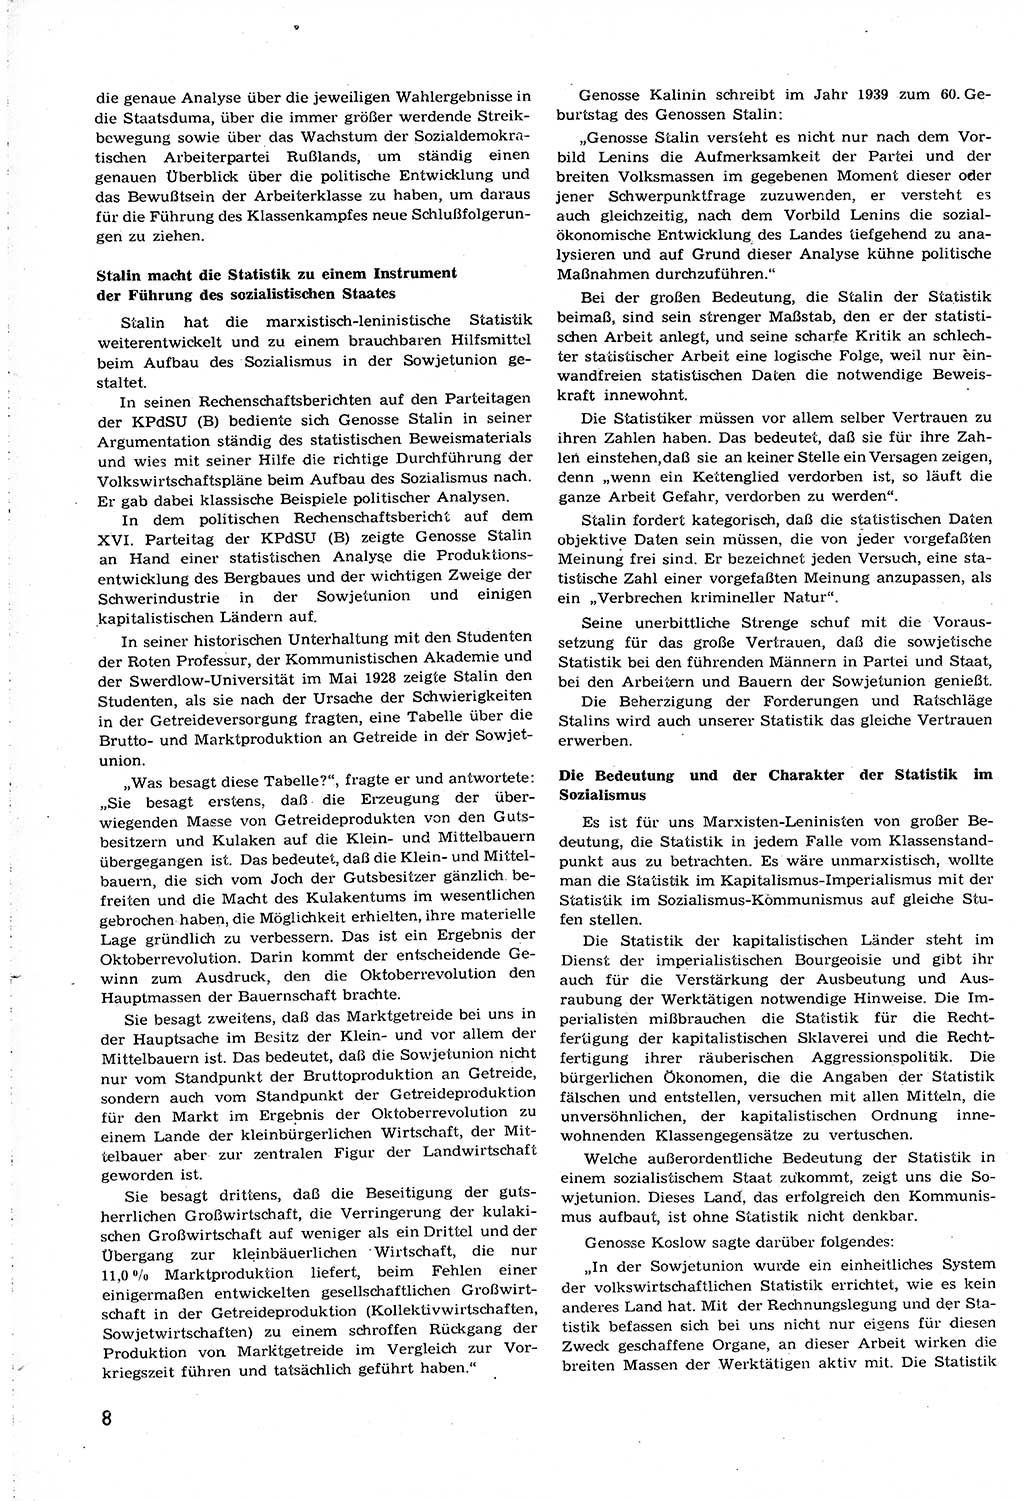 Neuer Weg (NW), Organ des Zentralkomitees (ZK) [Sozialistische Einheitspartei Deutschlands (SED)] für alle Parteiarbeiter, 8. Jahrgang [Deutsche Demokratische Republik (DDR)] 1953, Heft 19/8 (NW ZK SED DDR 1953, H. 19/8)